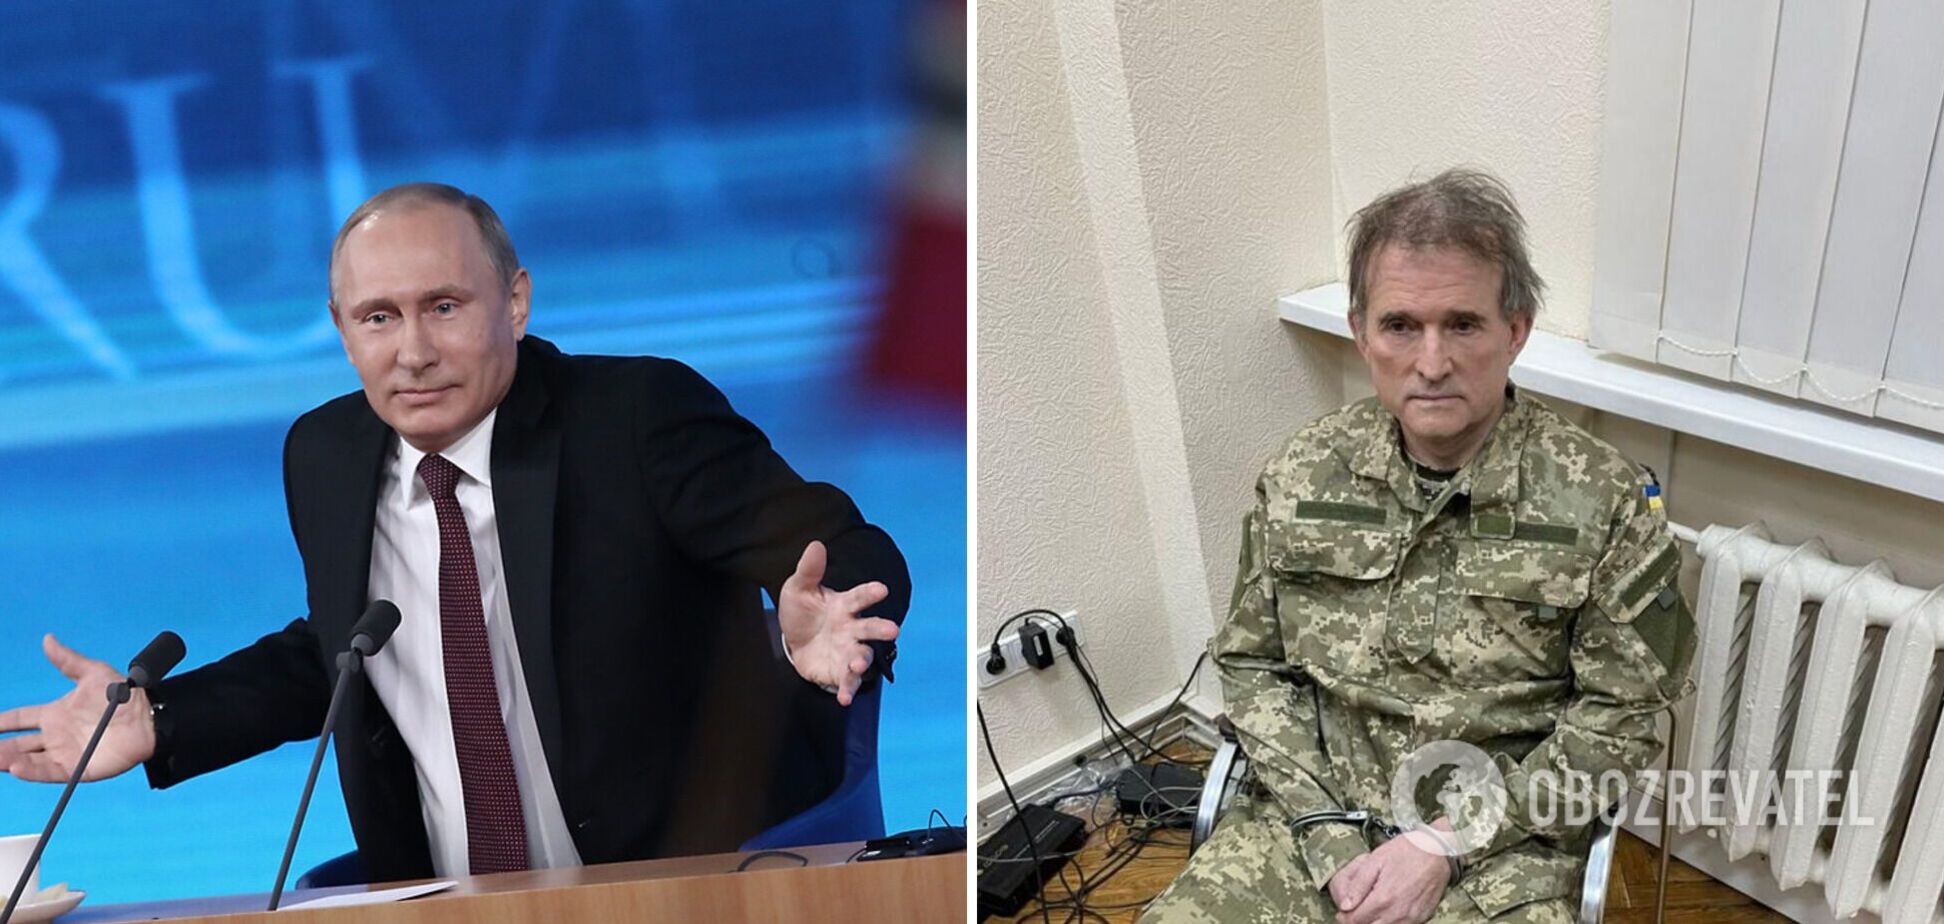 Кум Путина Медведчук неожиданно написал статью об Украине и призвал 'учитывать интересы' России: в войне обвинил Запад